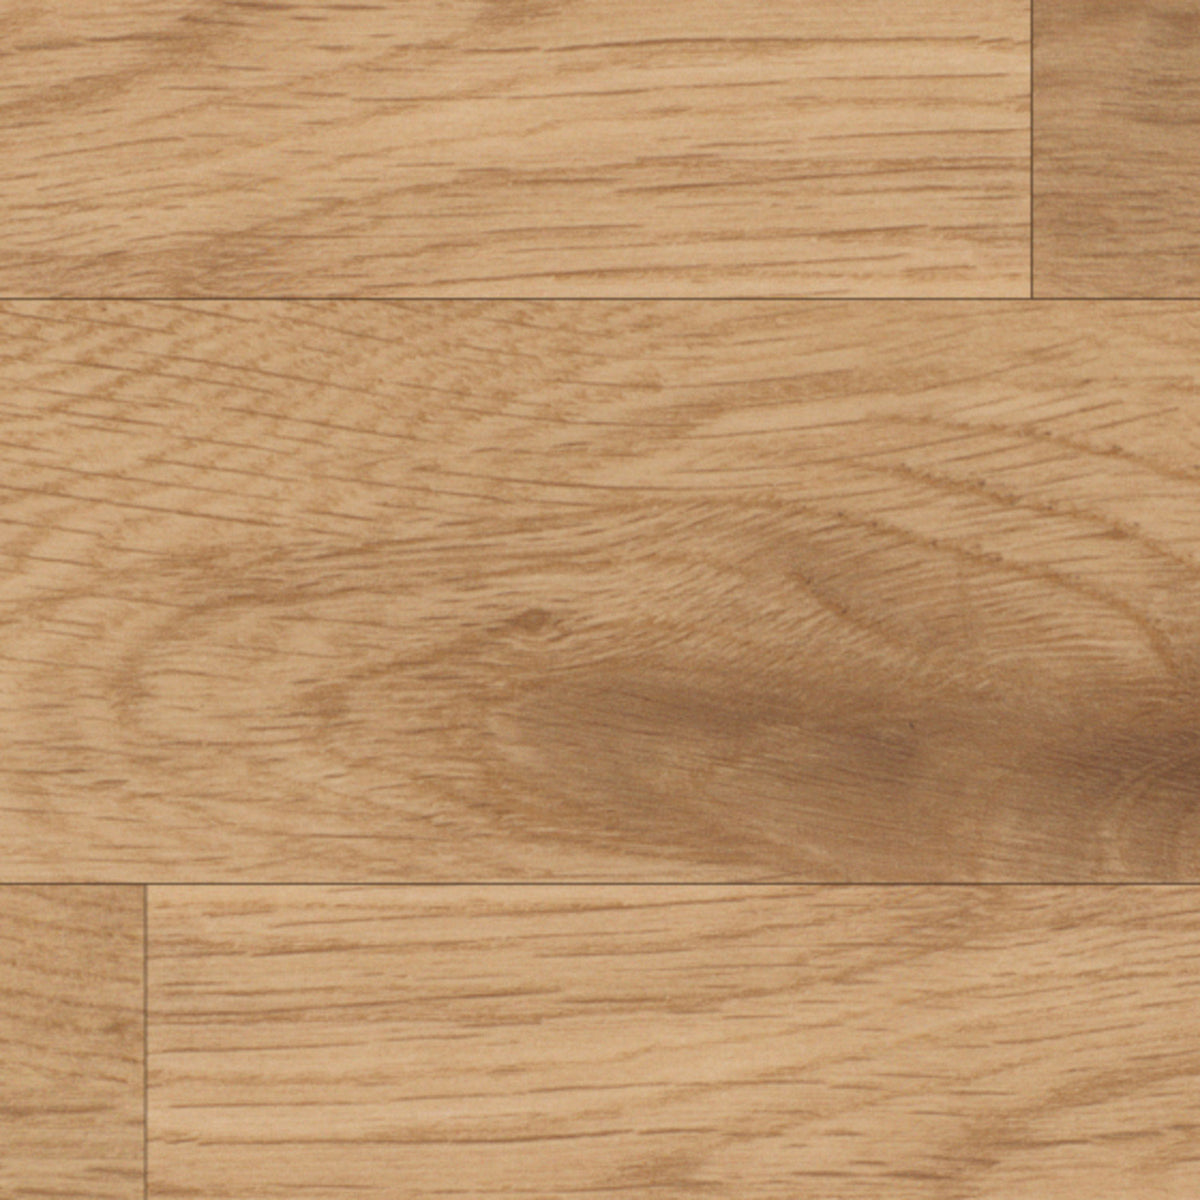 Karndean Da Vinci 3 in. x 36 in. Plank - Natural Oak